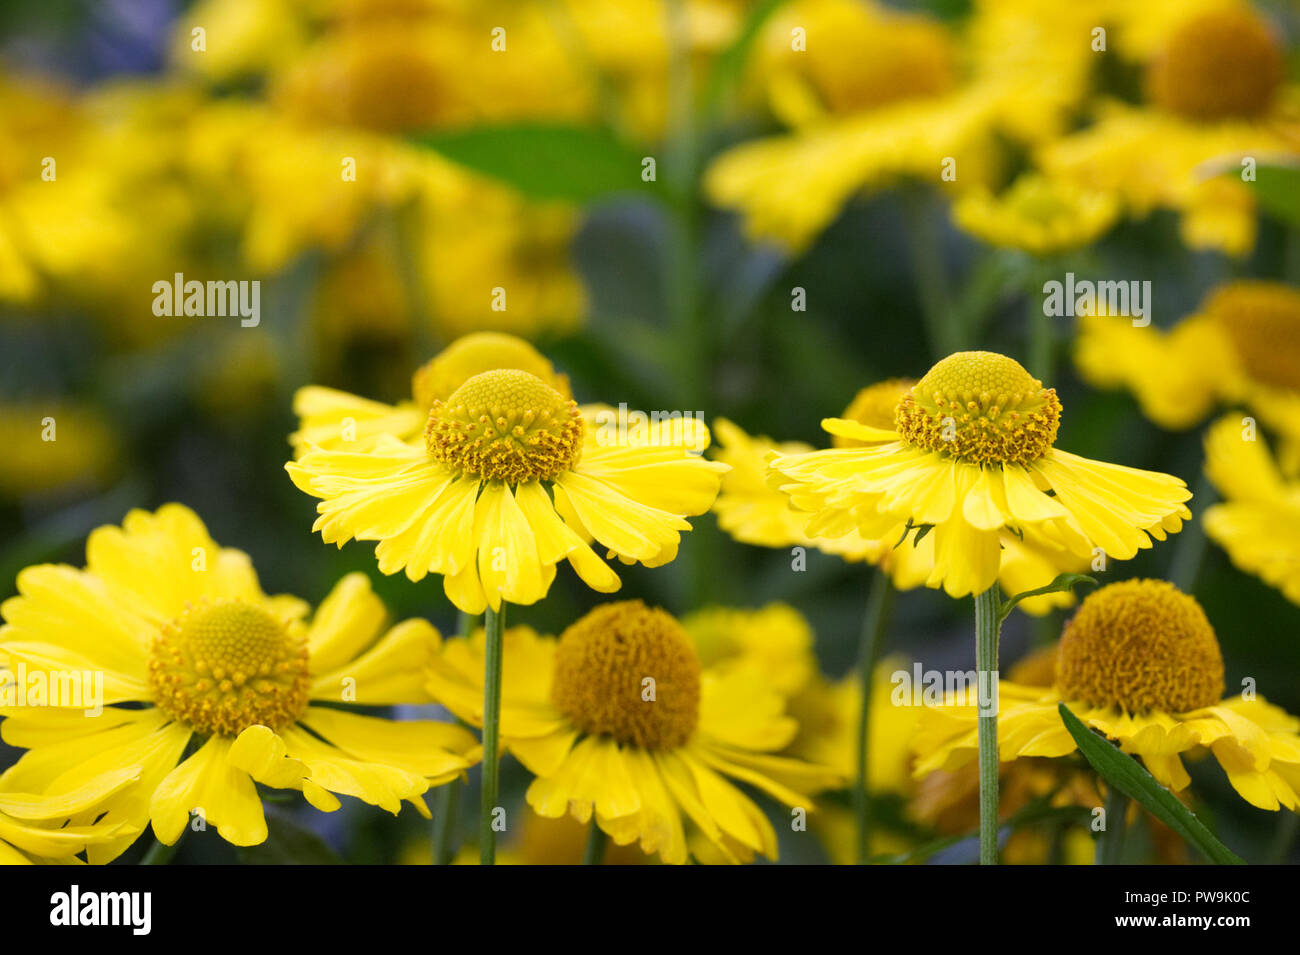 Helenium 'Kanaria' flowers. Stock Photo